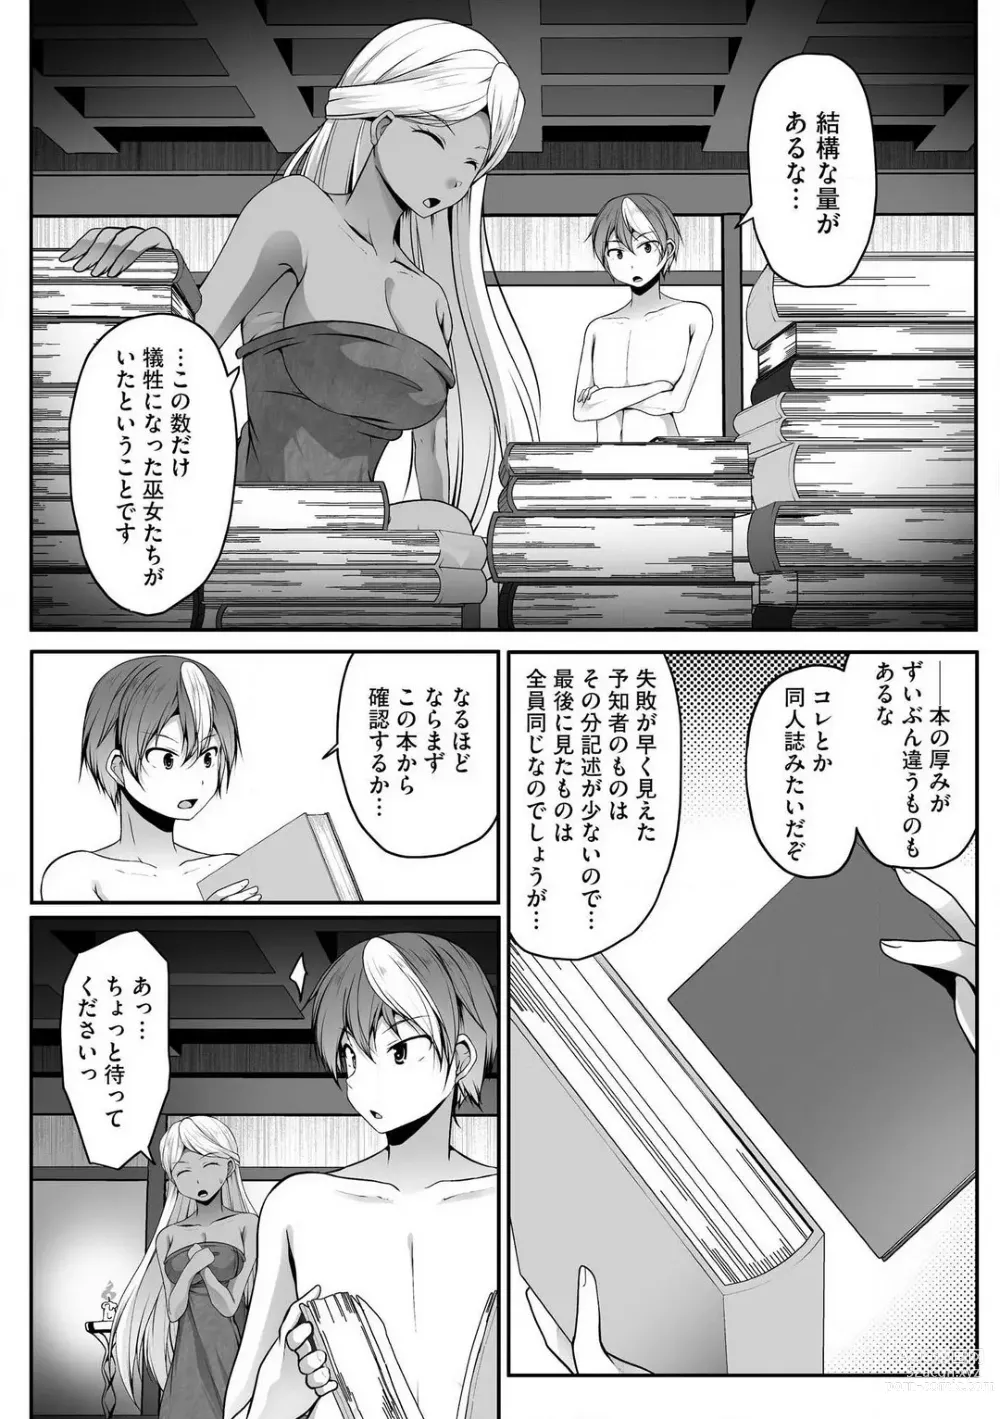 Page 337 of manga Cheat Skill Shihai